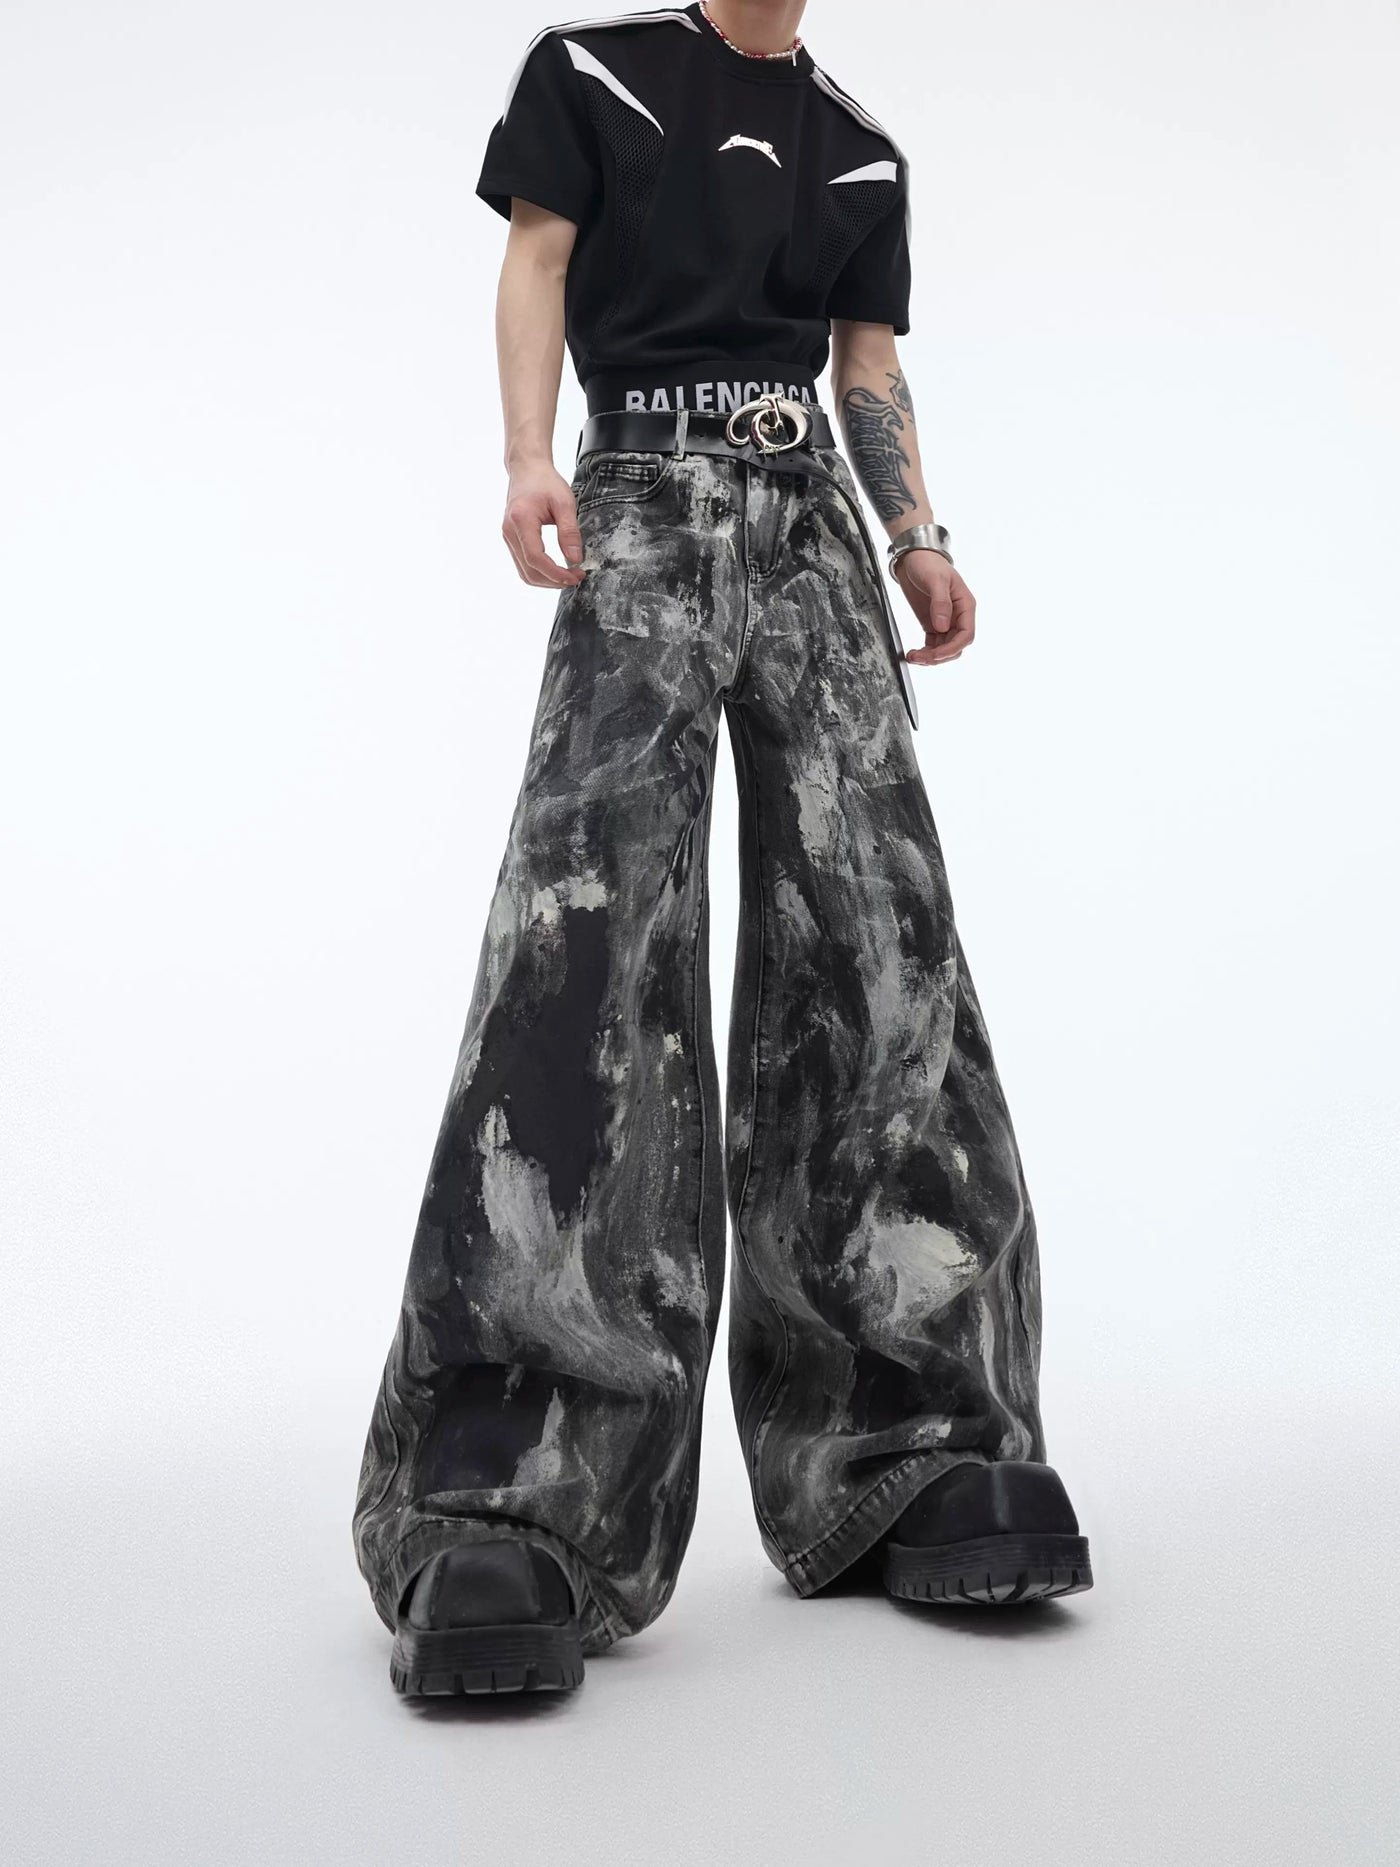 Paint Smudges Workwear Jeans Korean Street Fashion Jeans By Argue Culture Shop Online at OH Vault